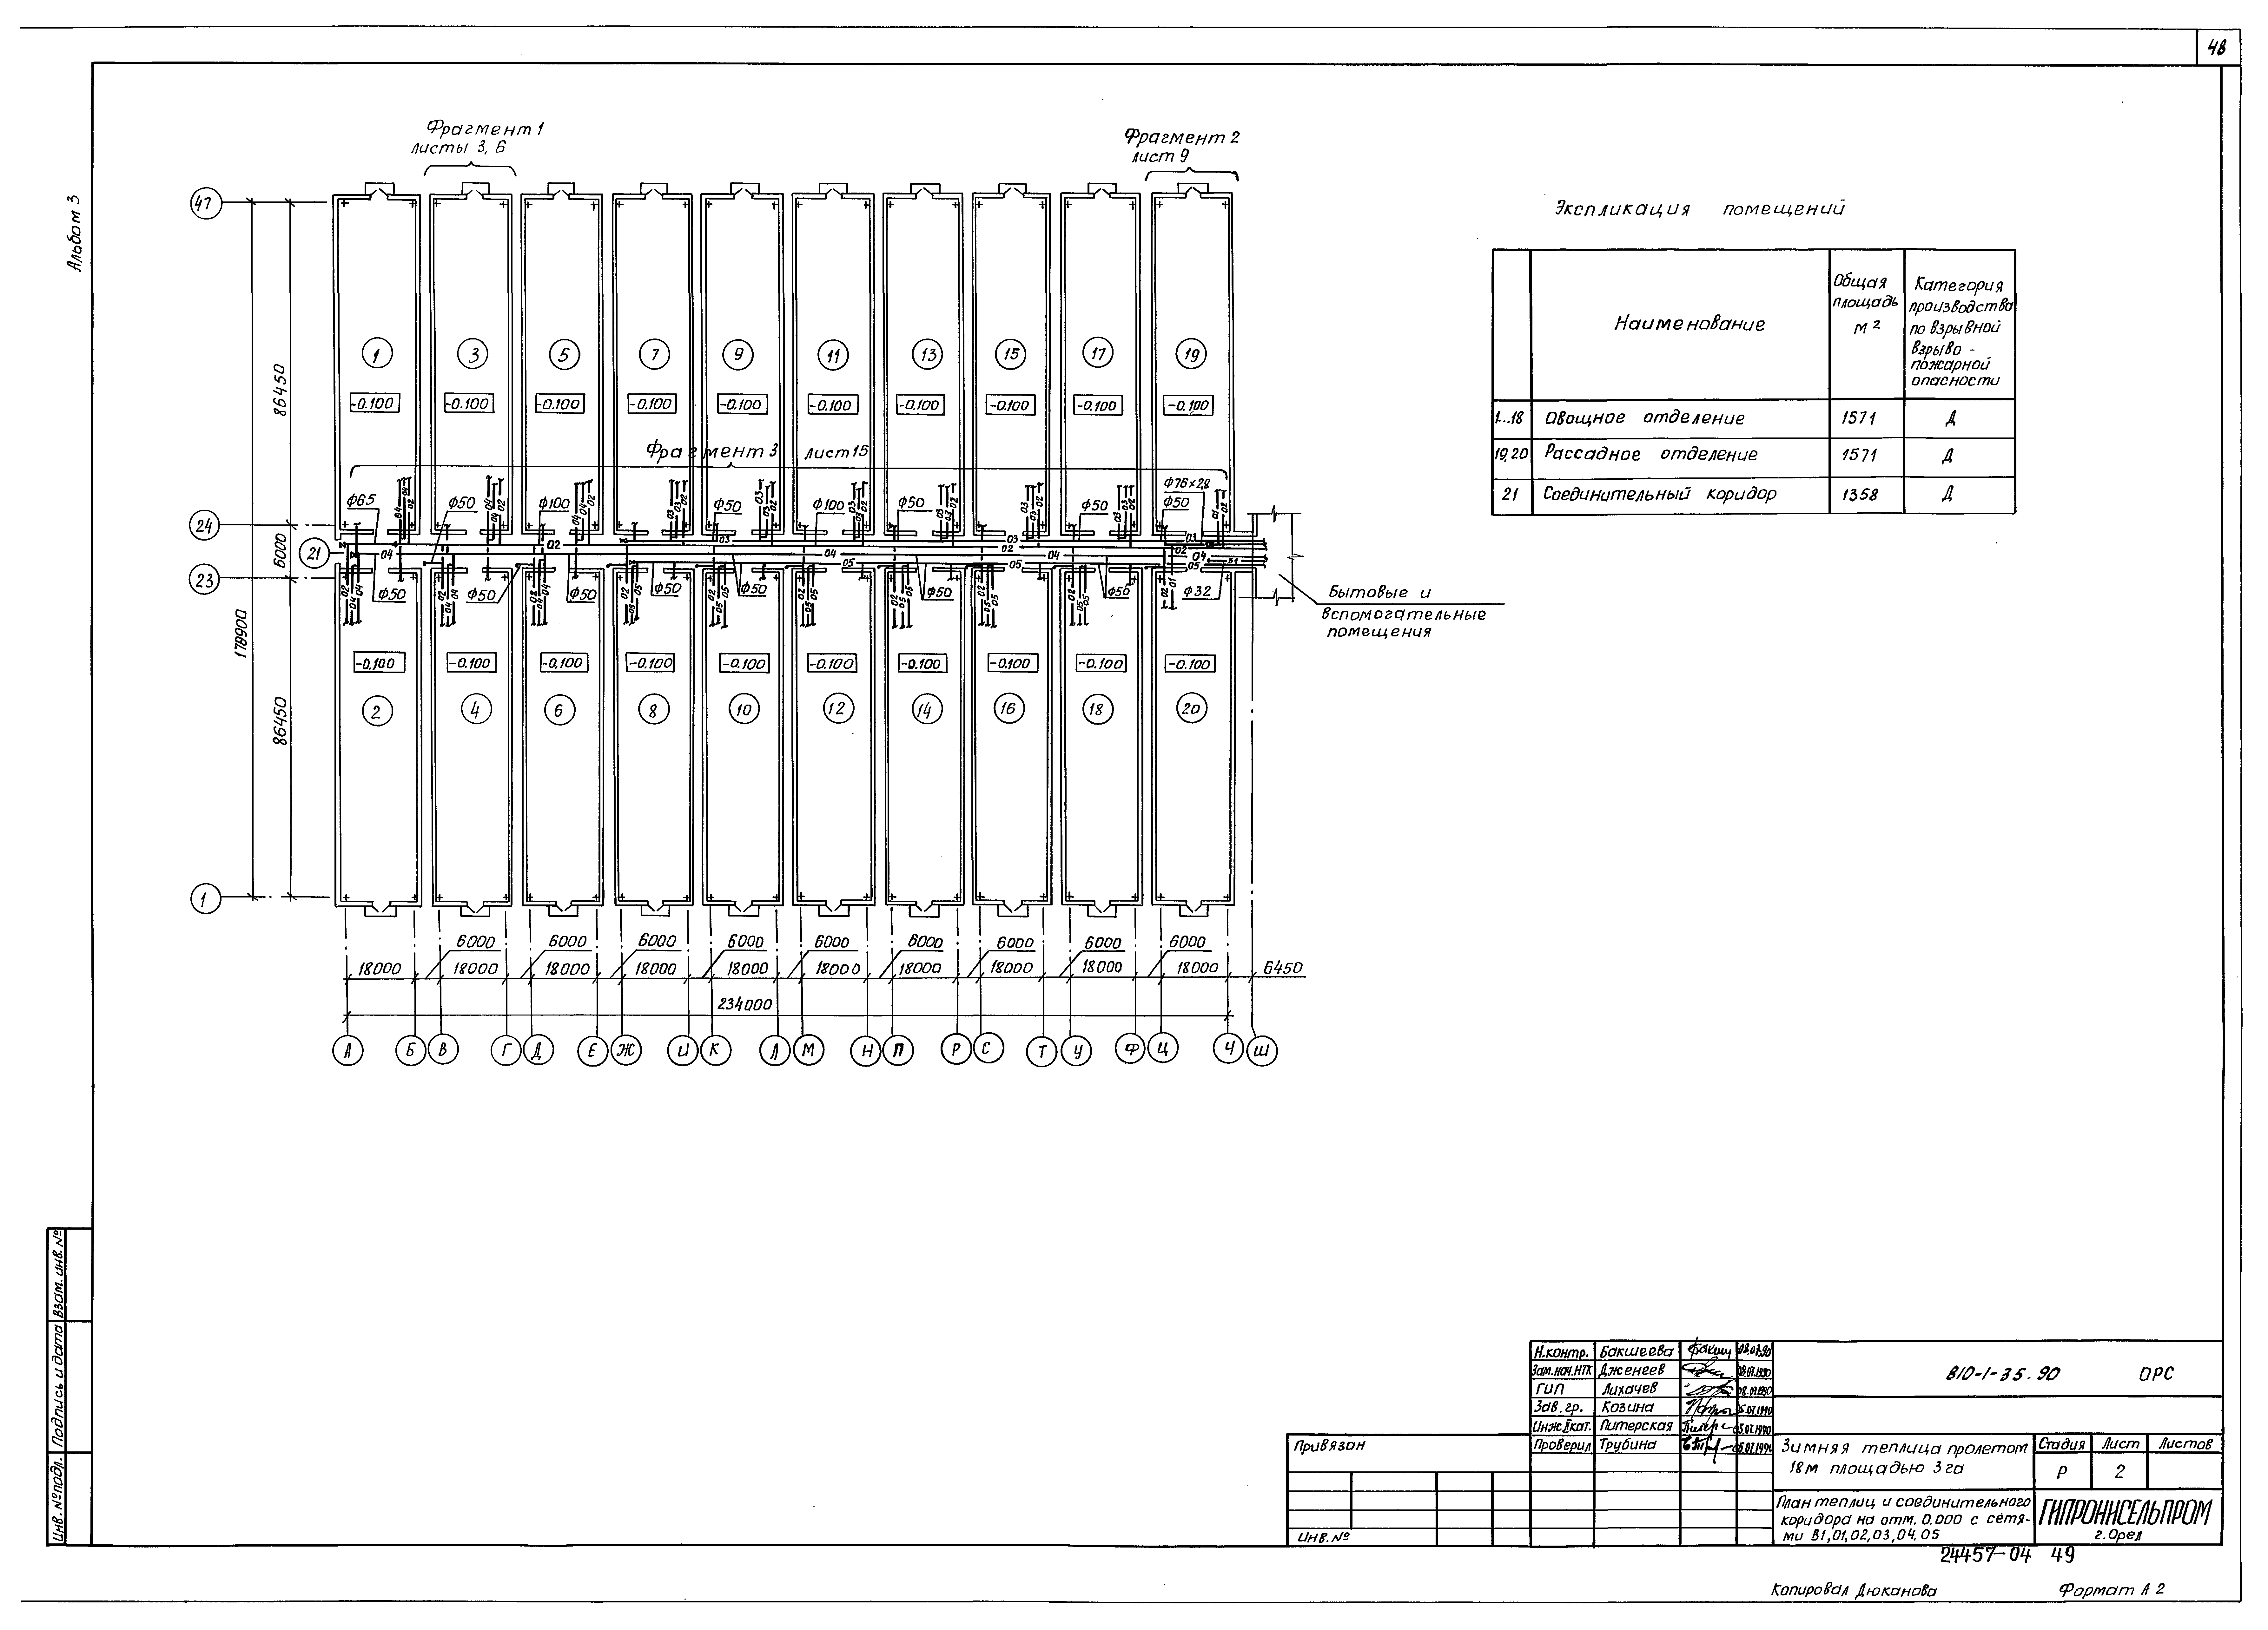 Типовой проект 810-1-35.90